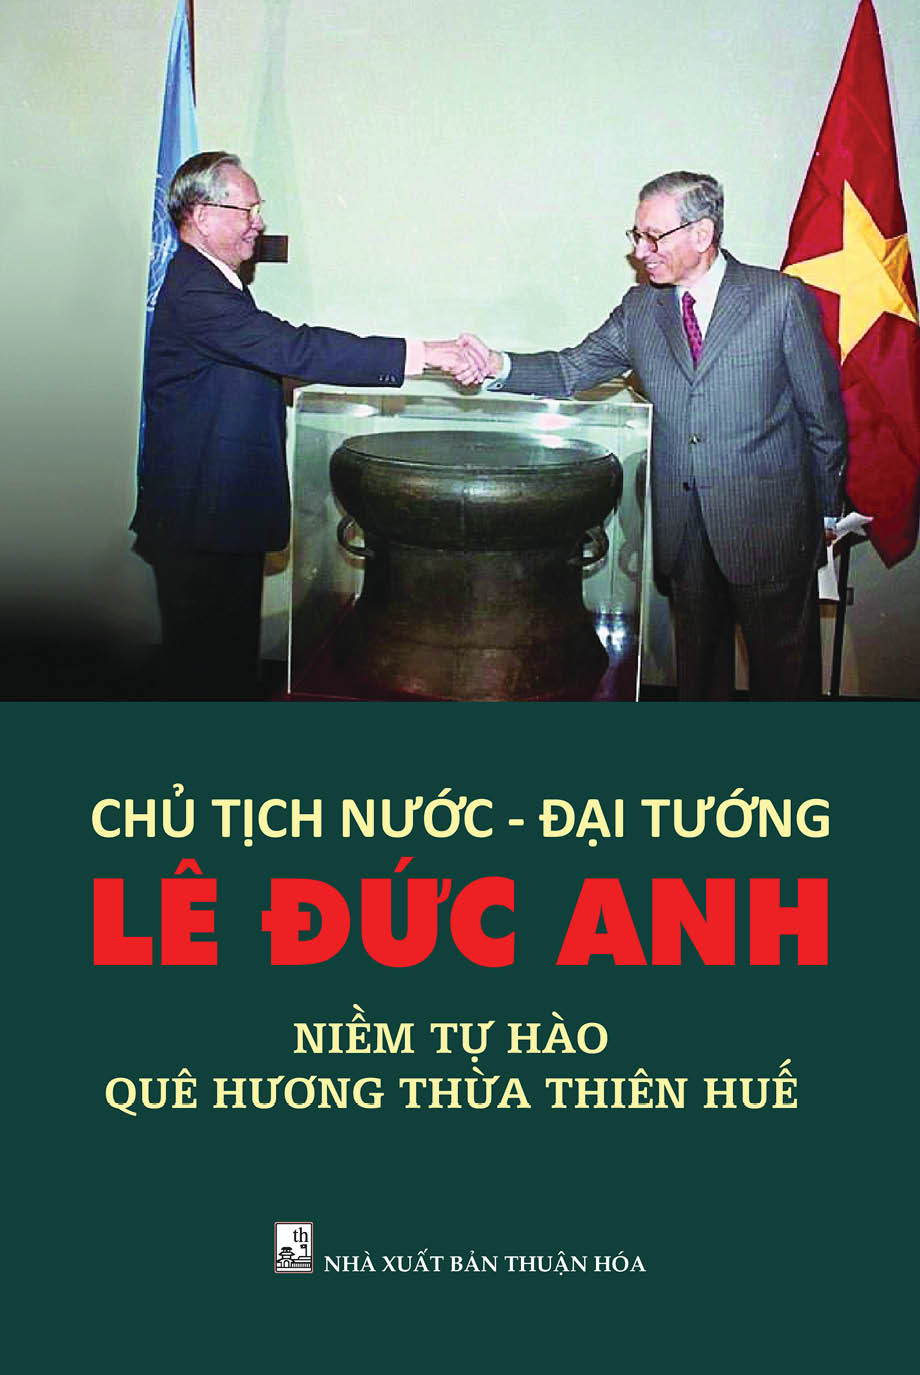 Niềm tự hào của quê hương Thừa Thiên Huế